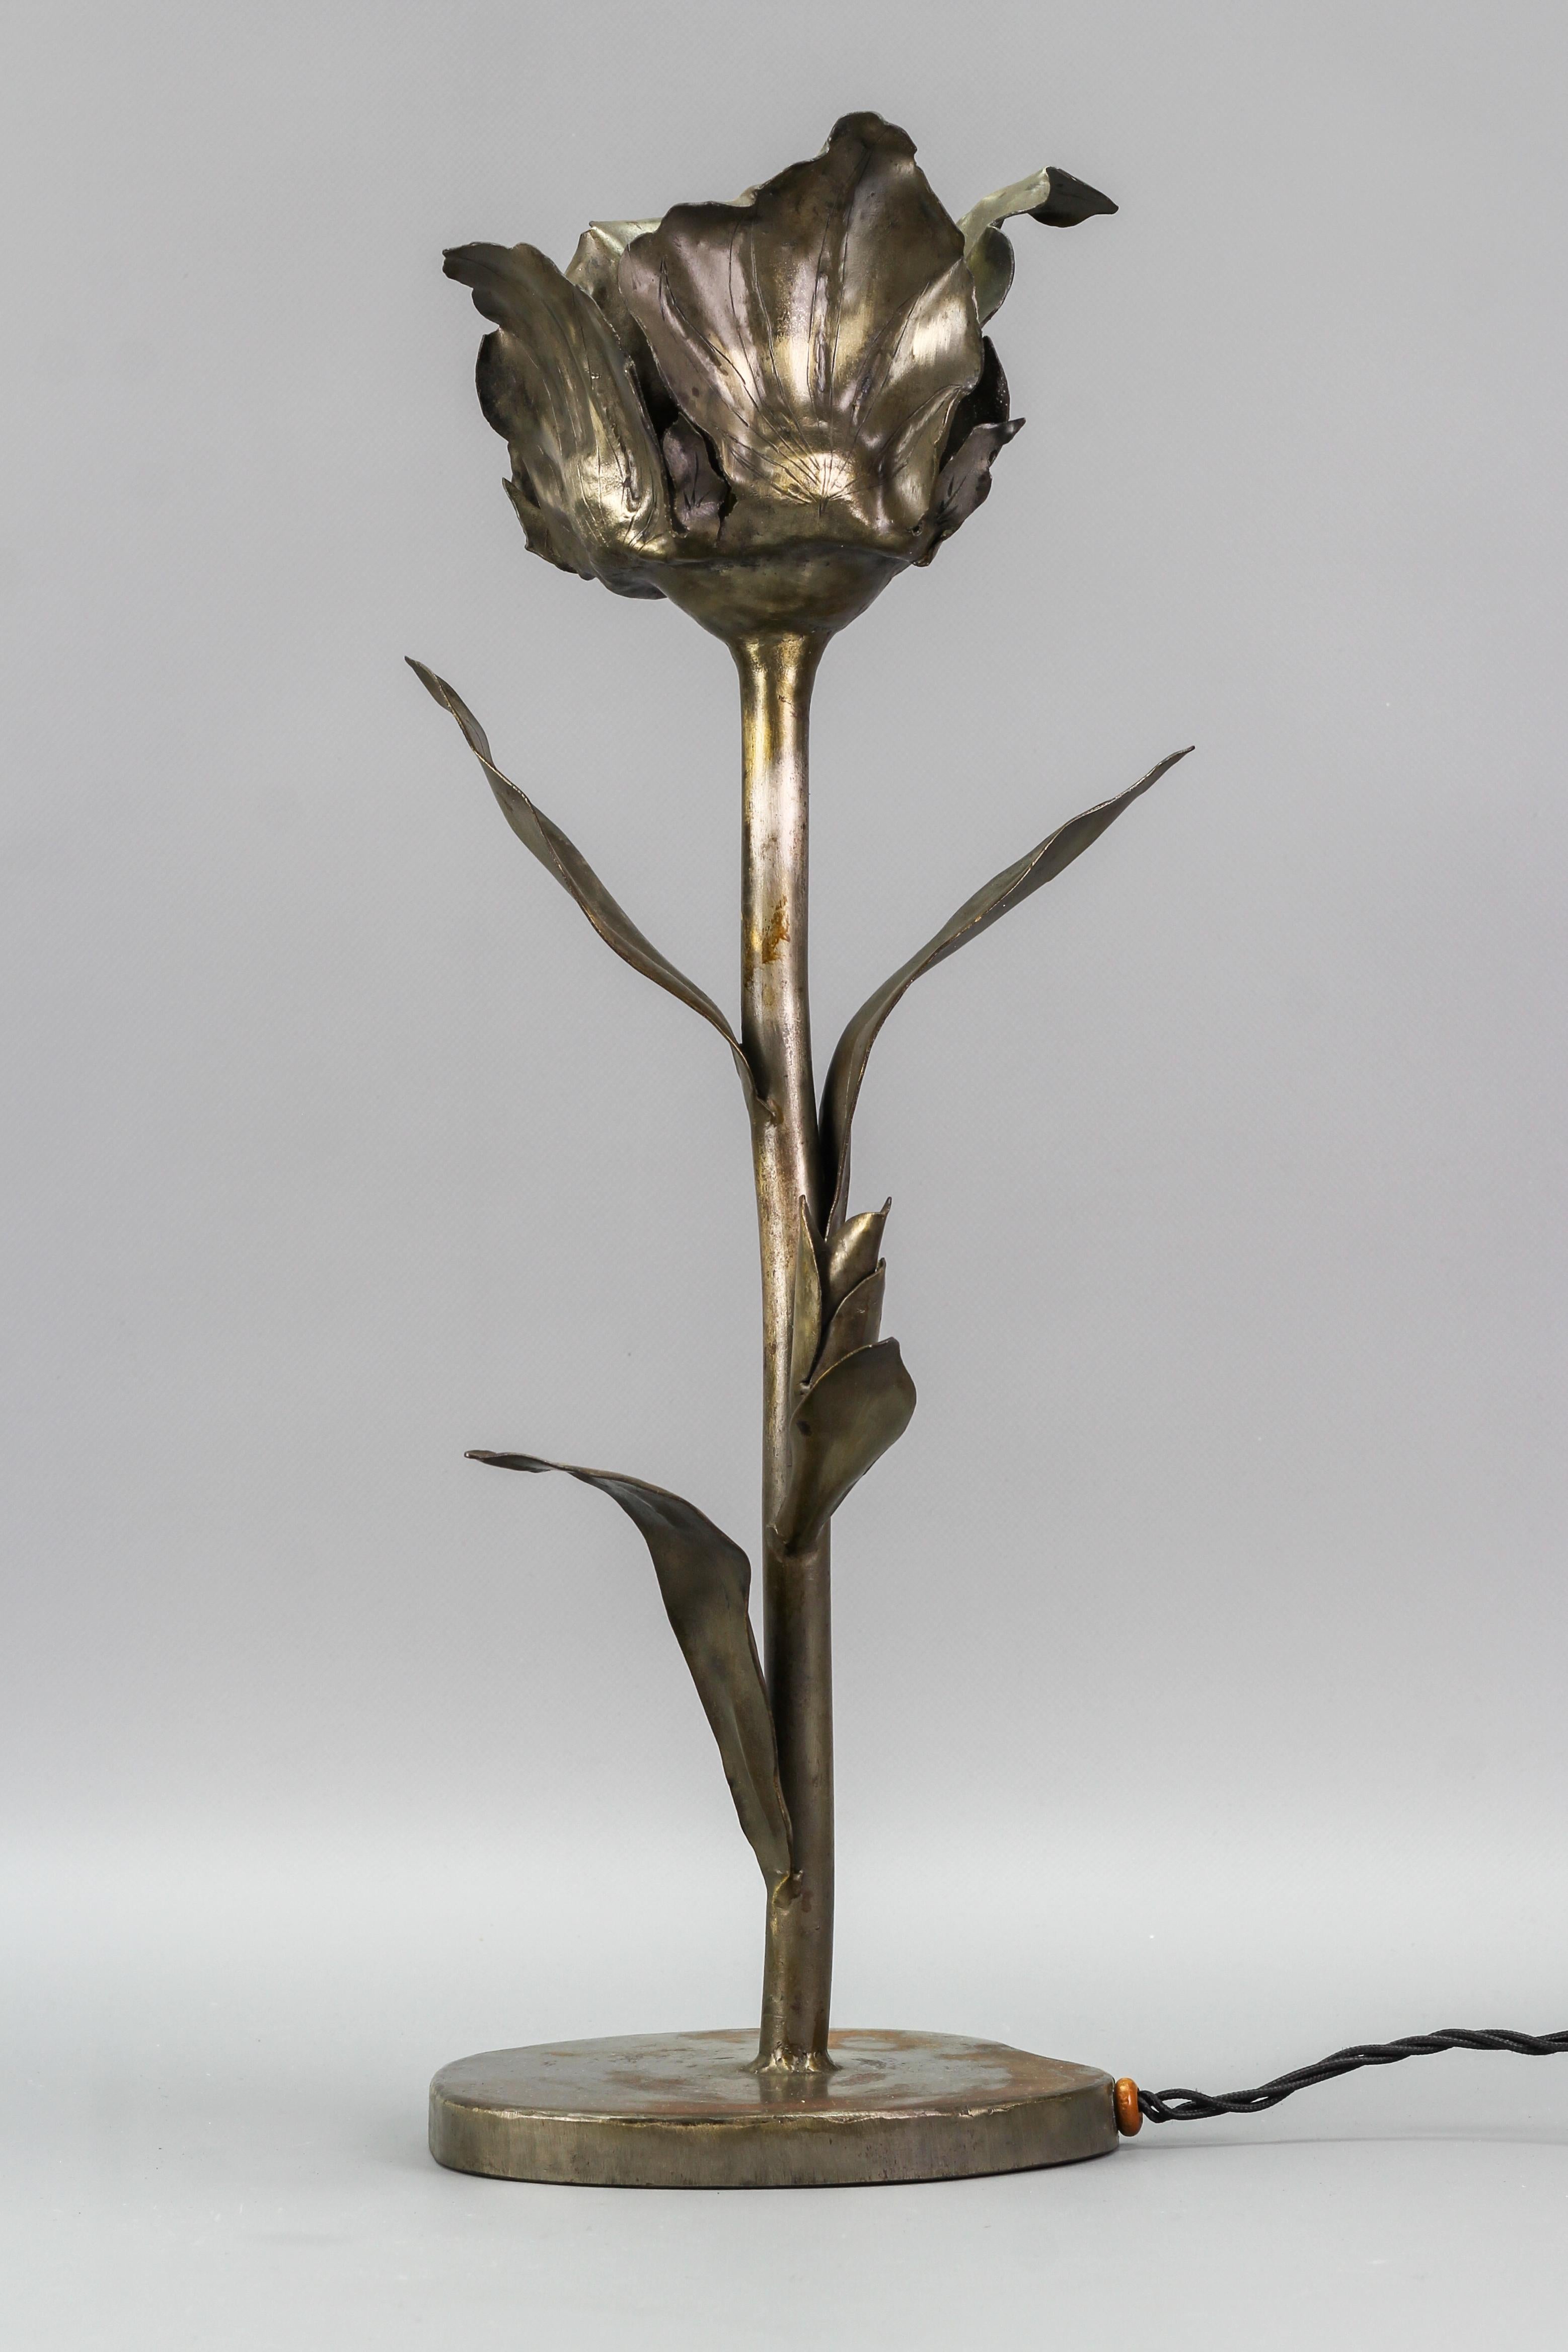 Lampe de table en métal unique et impressionnante, fabriquée à la main au milieu du siècle dernier, en forme de grande fleur avec des bourgeons et des feuilles ; signée 